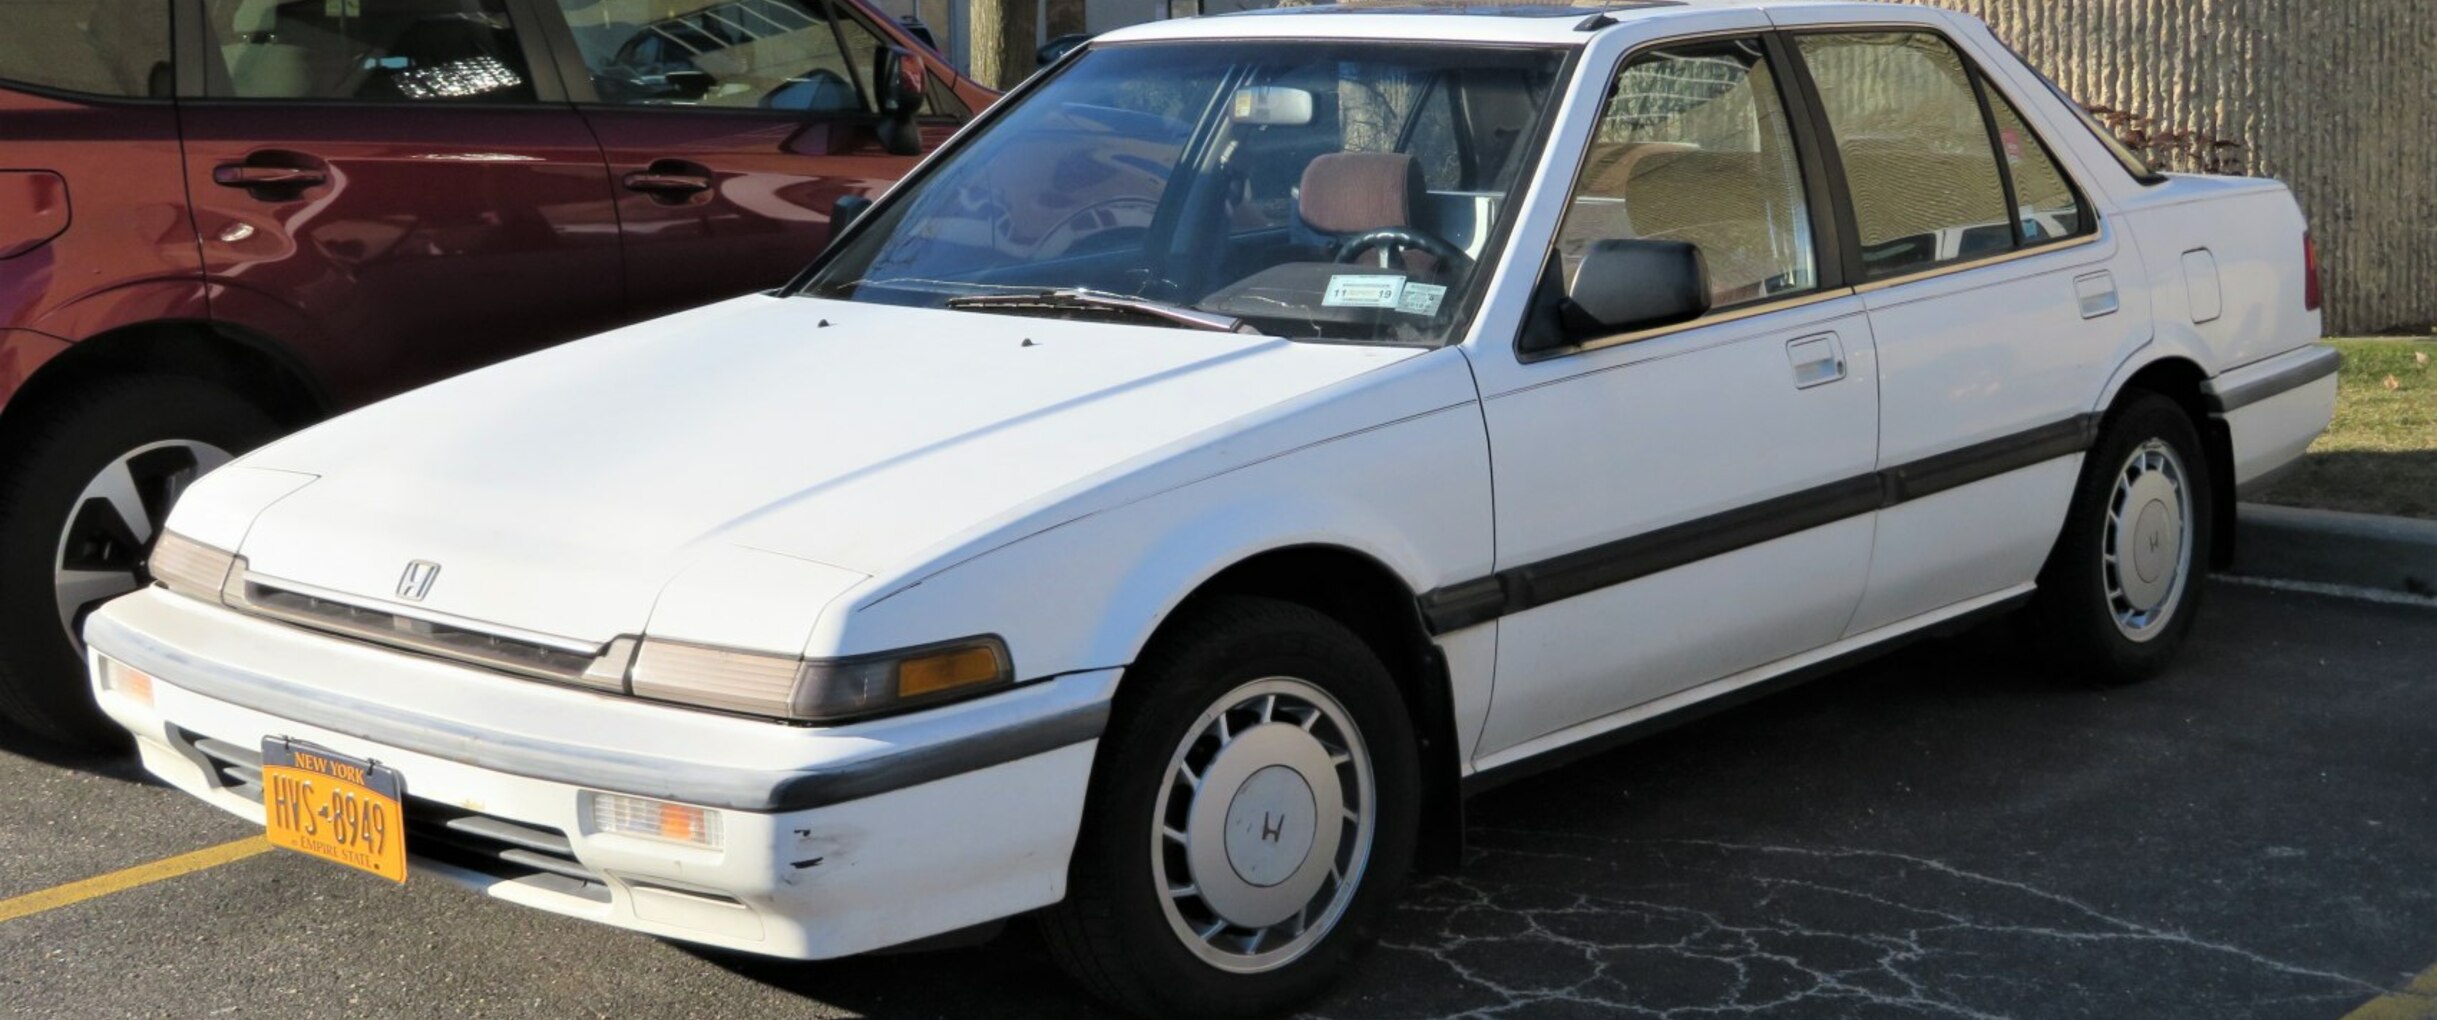 Khám bệnh xe Honda Accord 1987 bị giật cục nổ không đều  HỏiĐáp Kỹ Thuật   Otosaigon